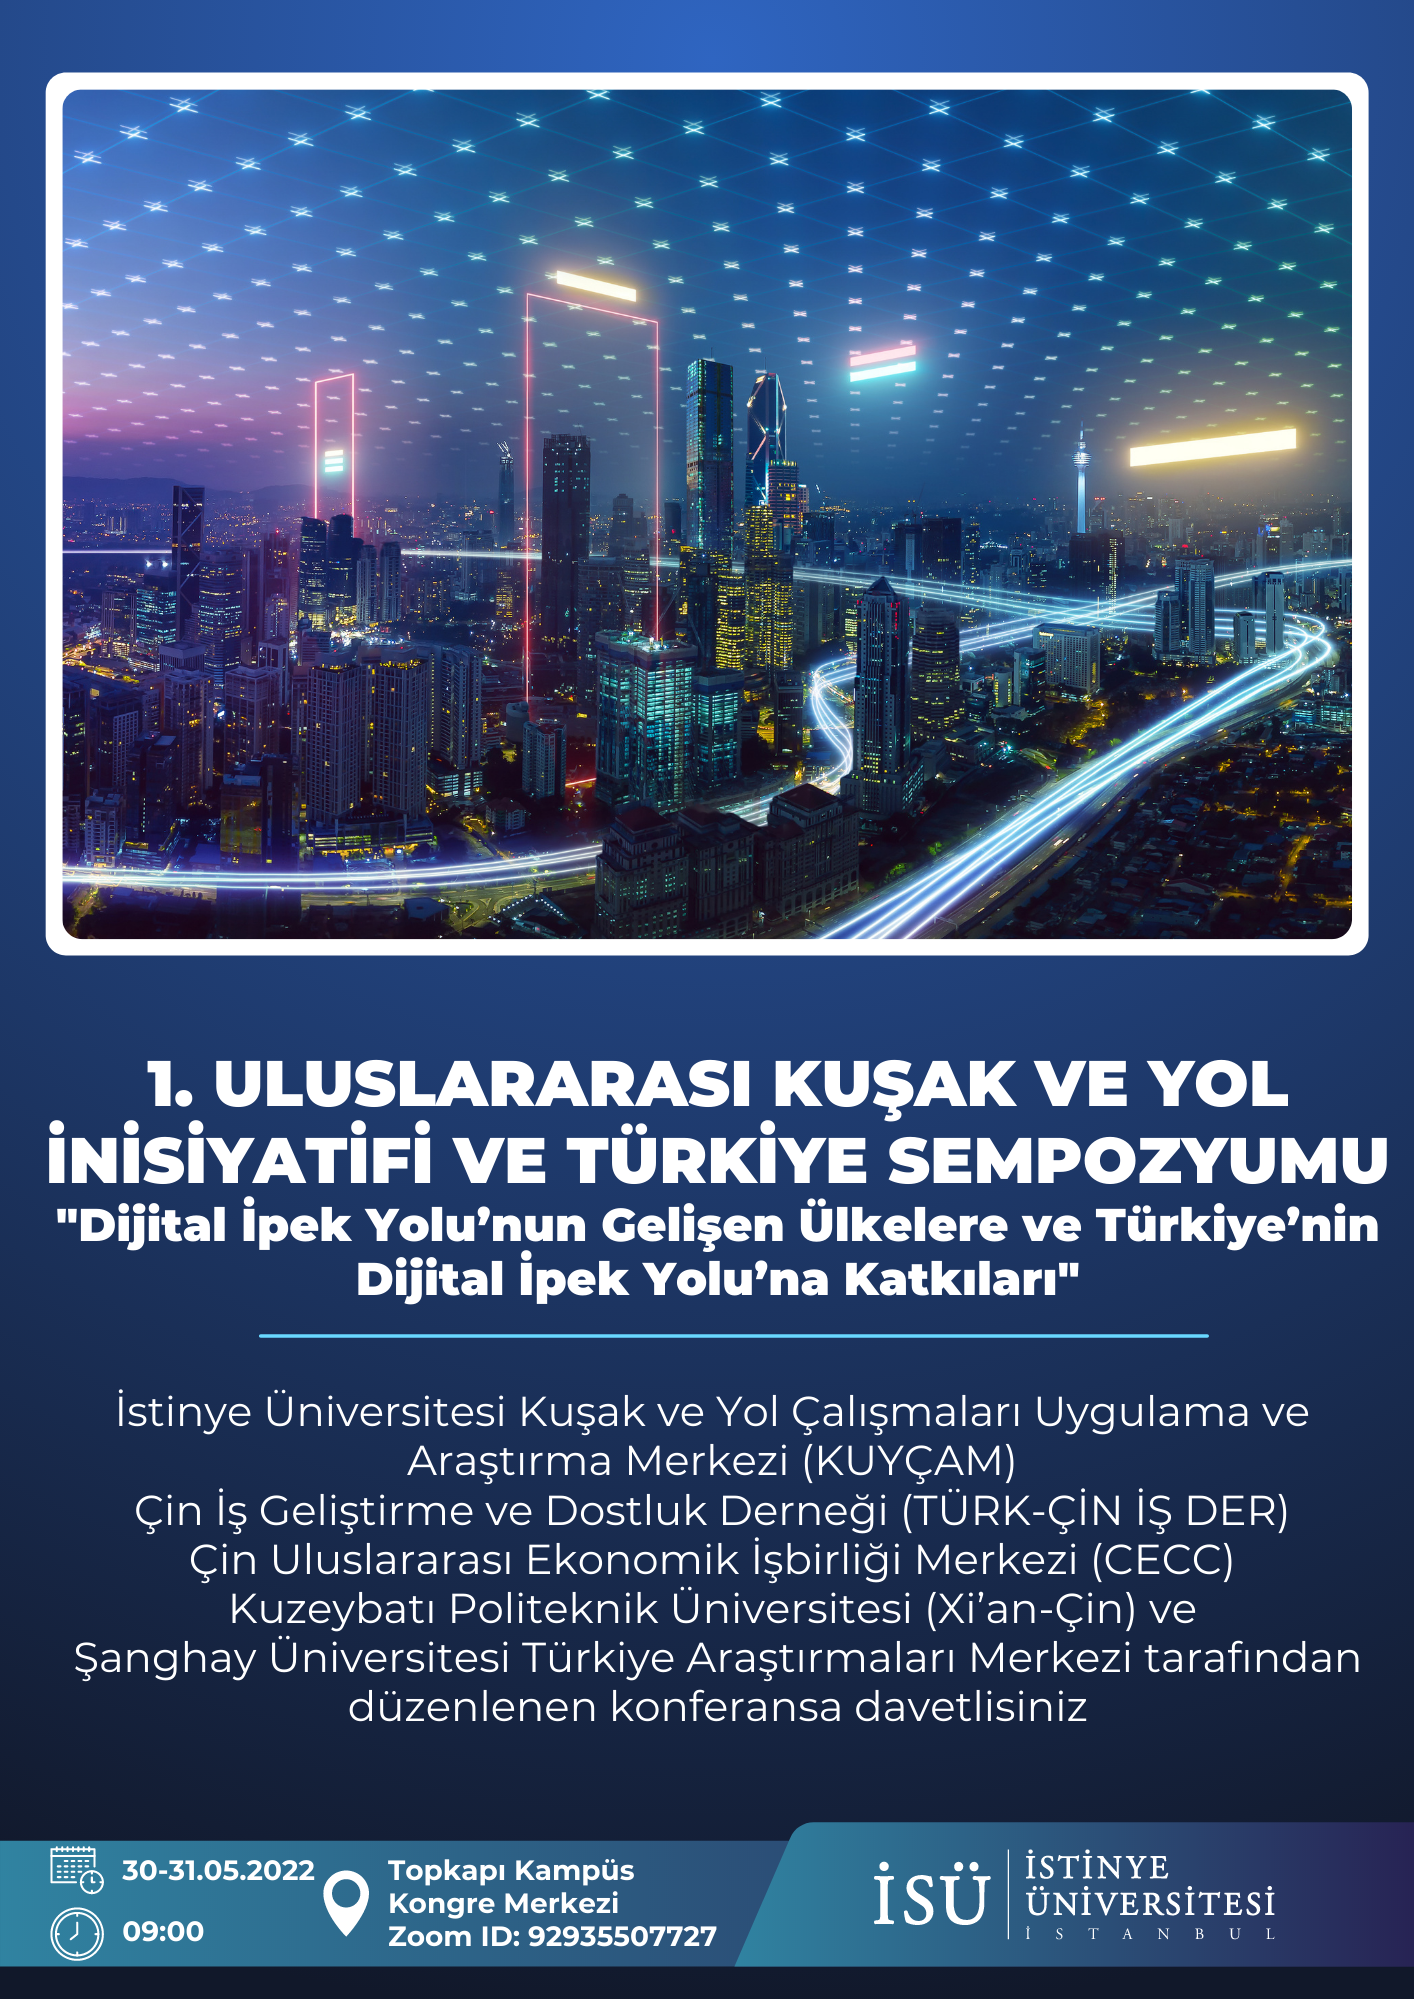 1. Uluslararası Kuşak ve Yol İnisiyatifi ve Türkiye Sempozyumu